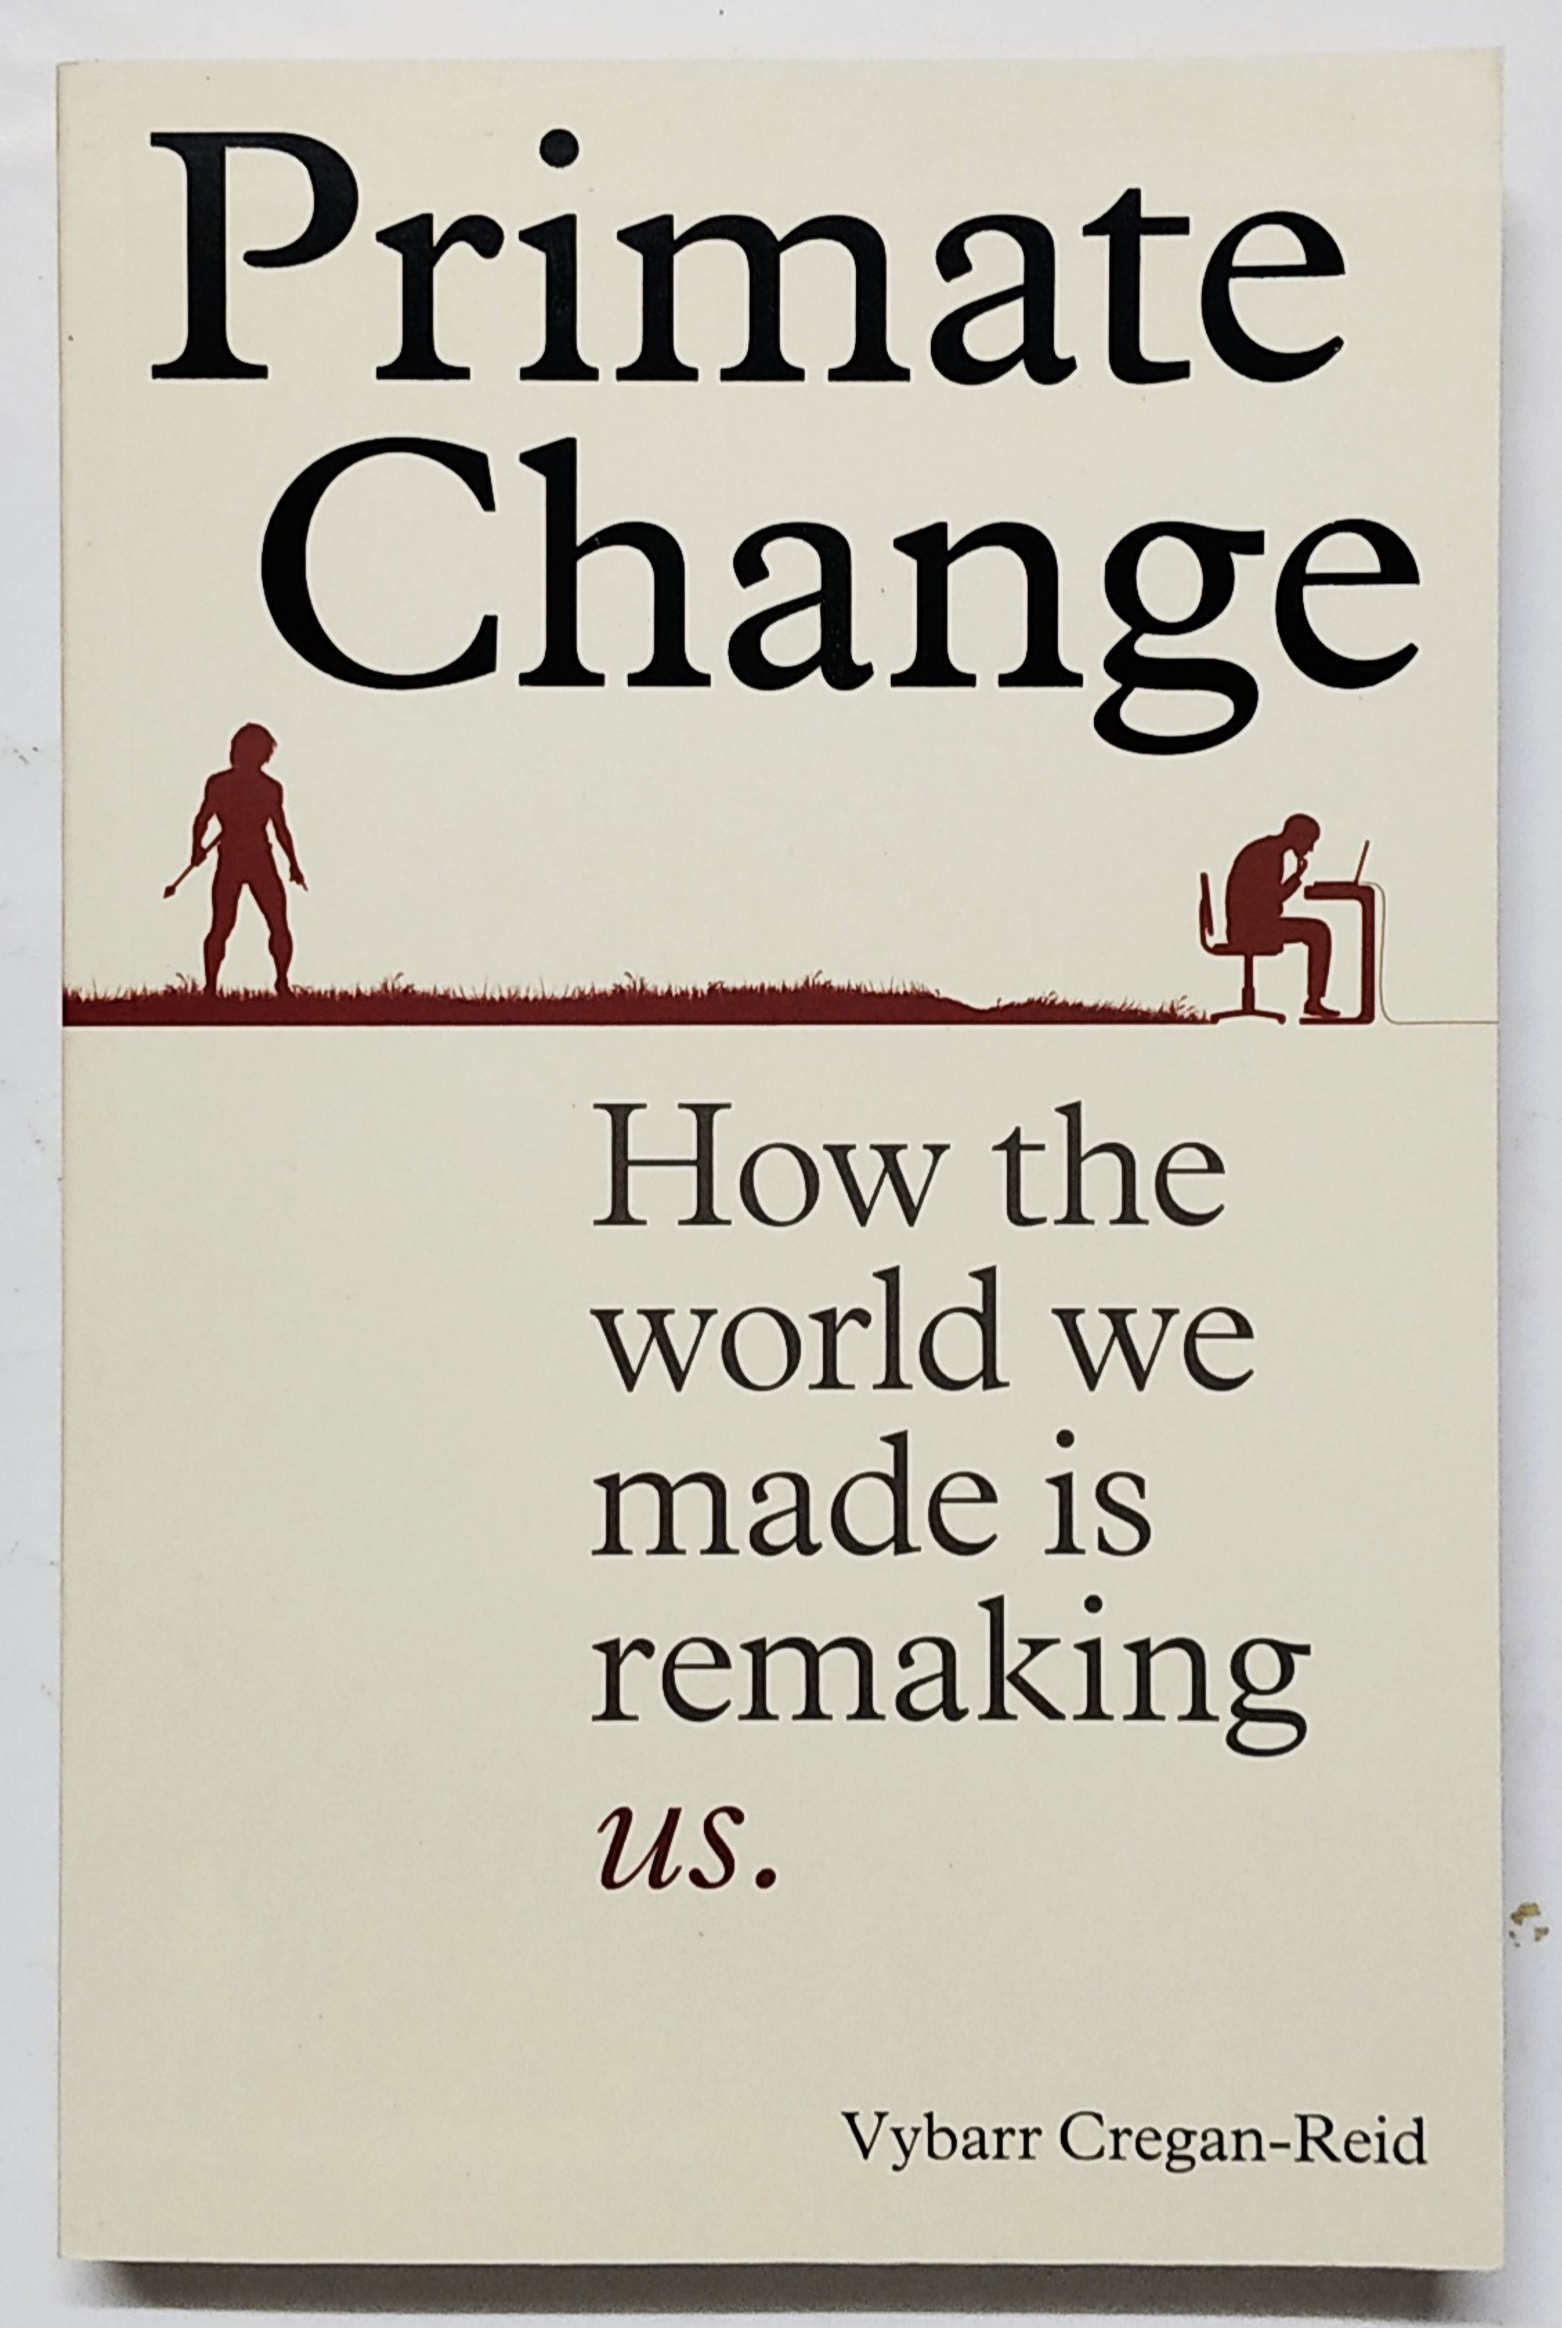 หนังสือความรู้ ภาษาอังกฤษ PRIMATE CHANGE How tje world we made is remaking us.